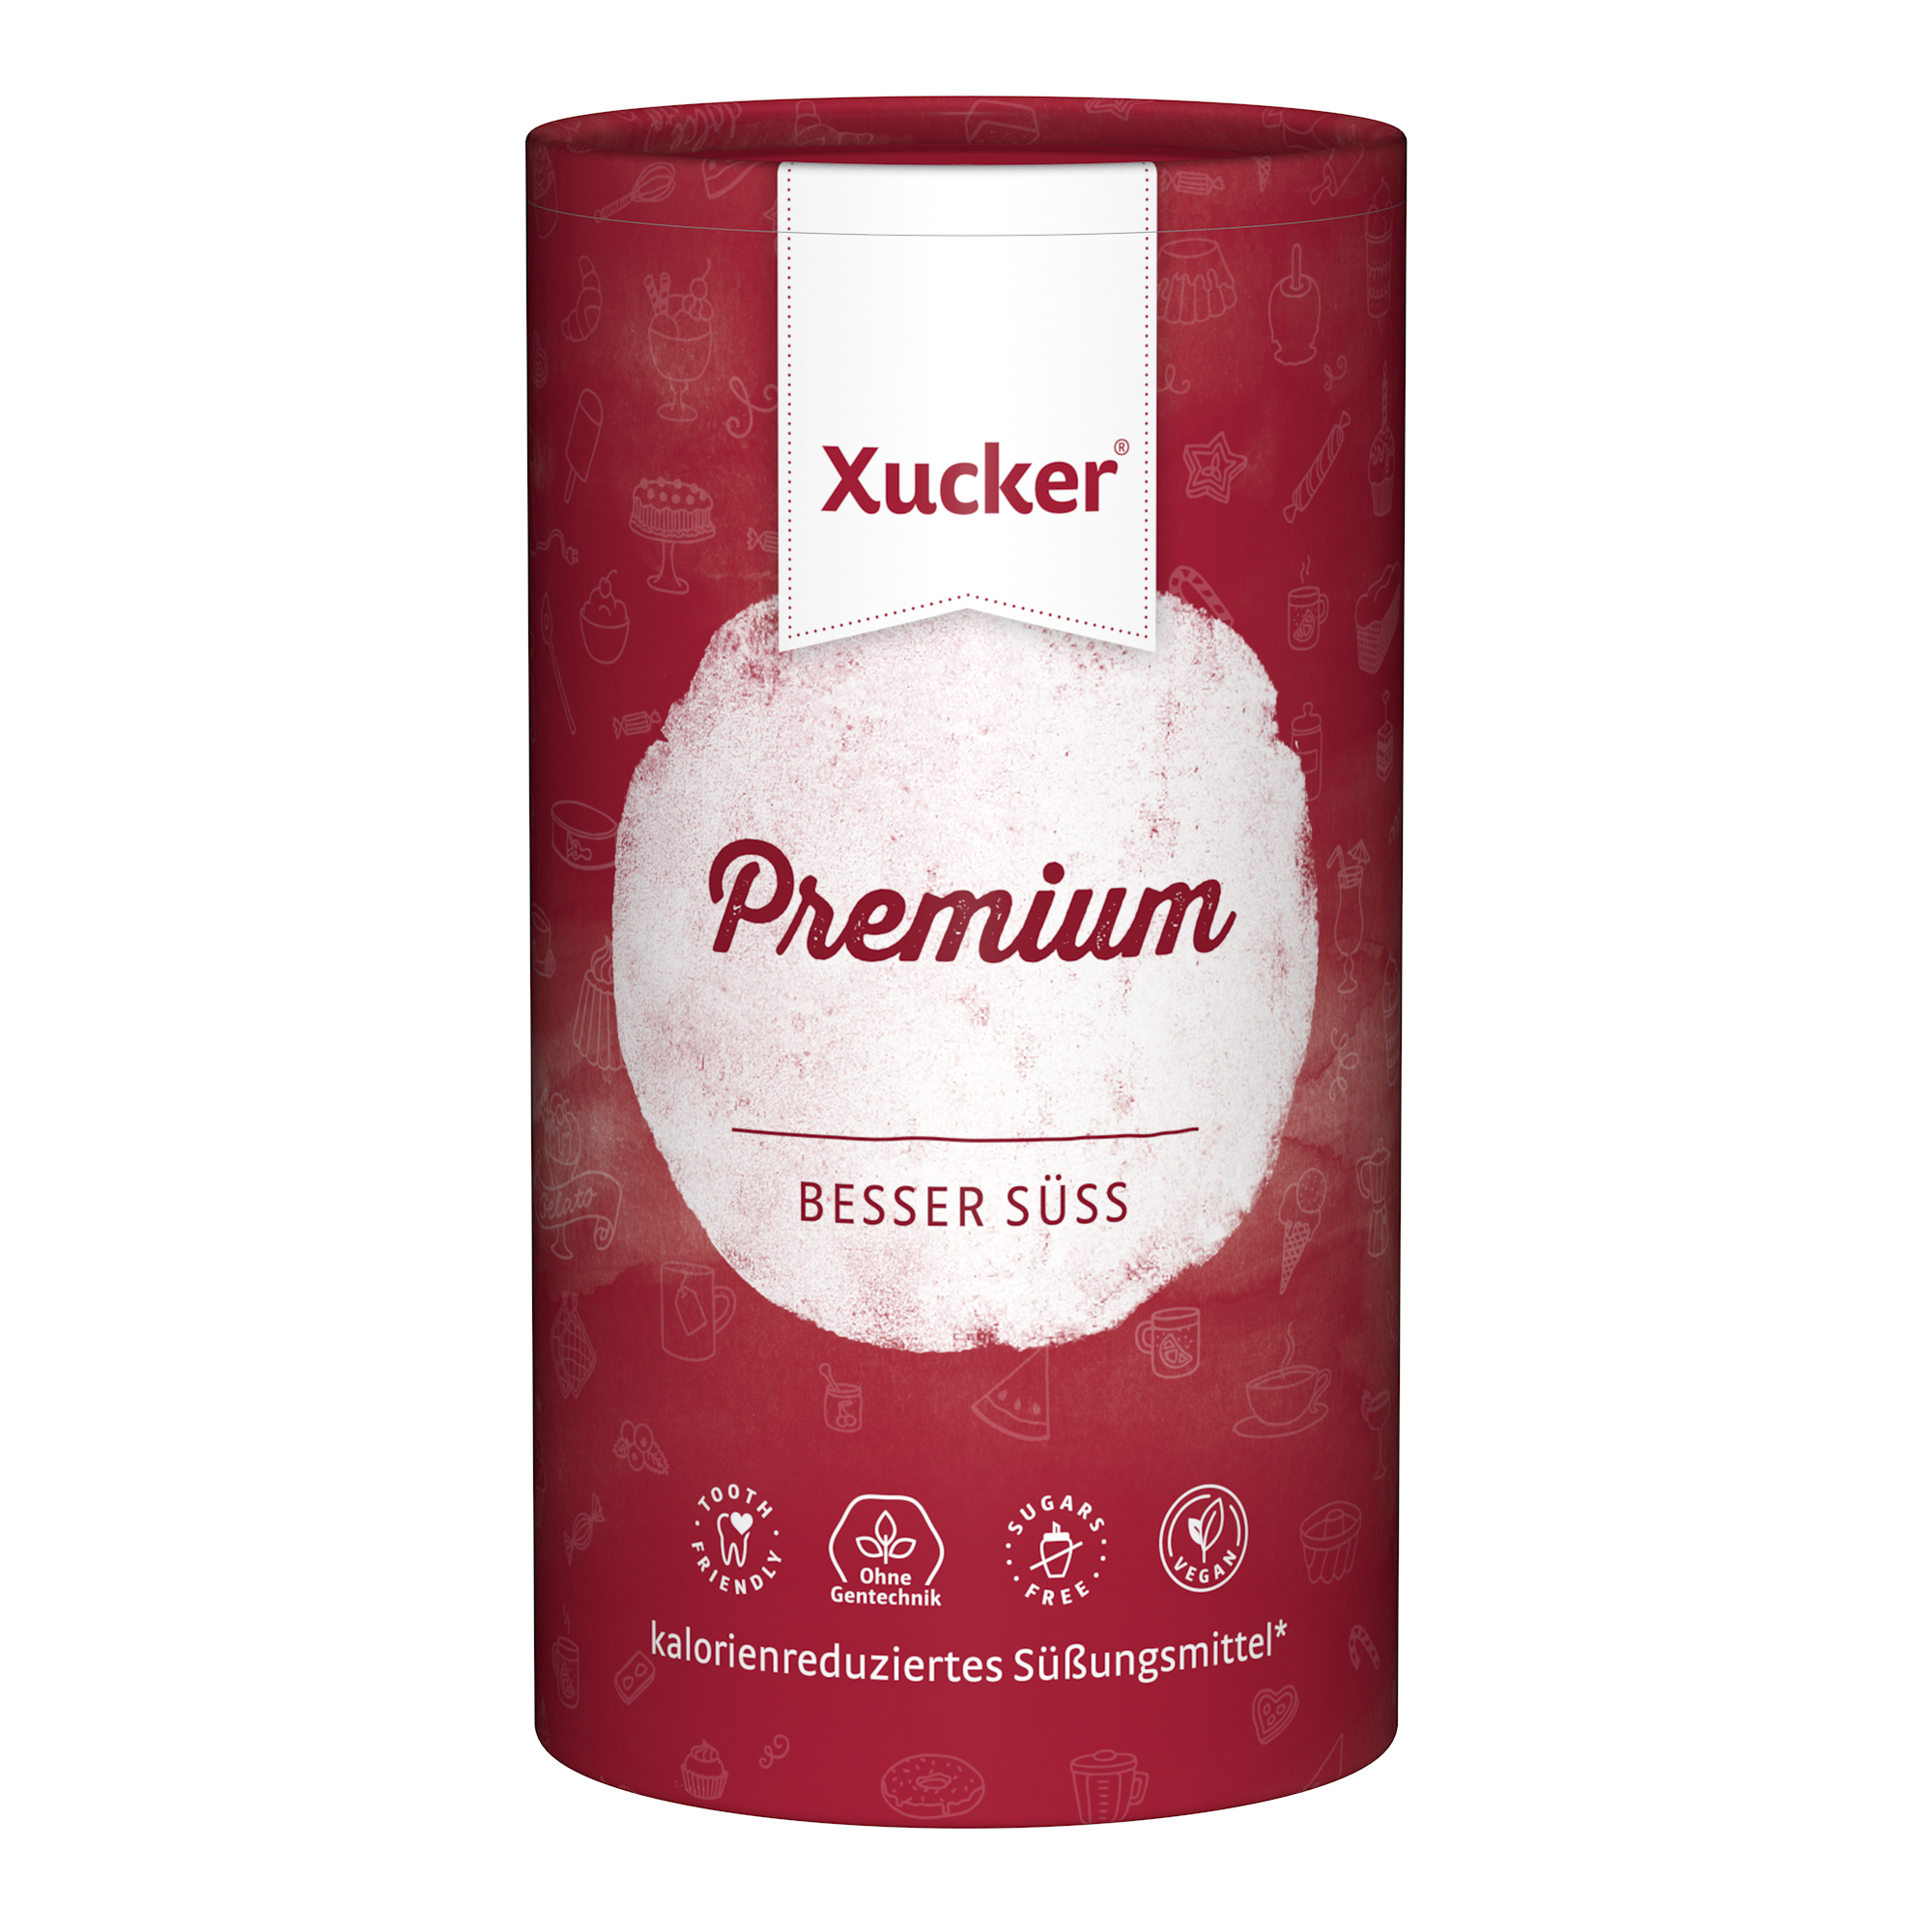 Xucker Premium (finnisches Xylit)